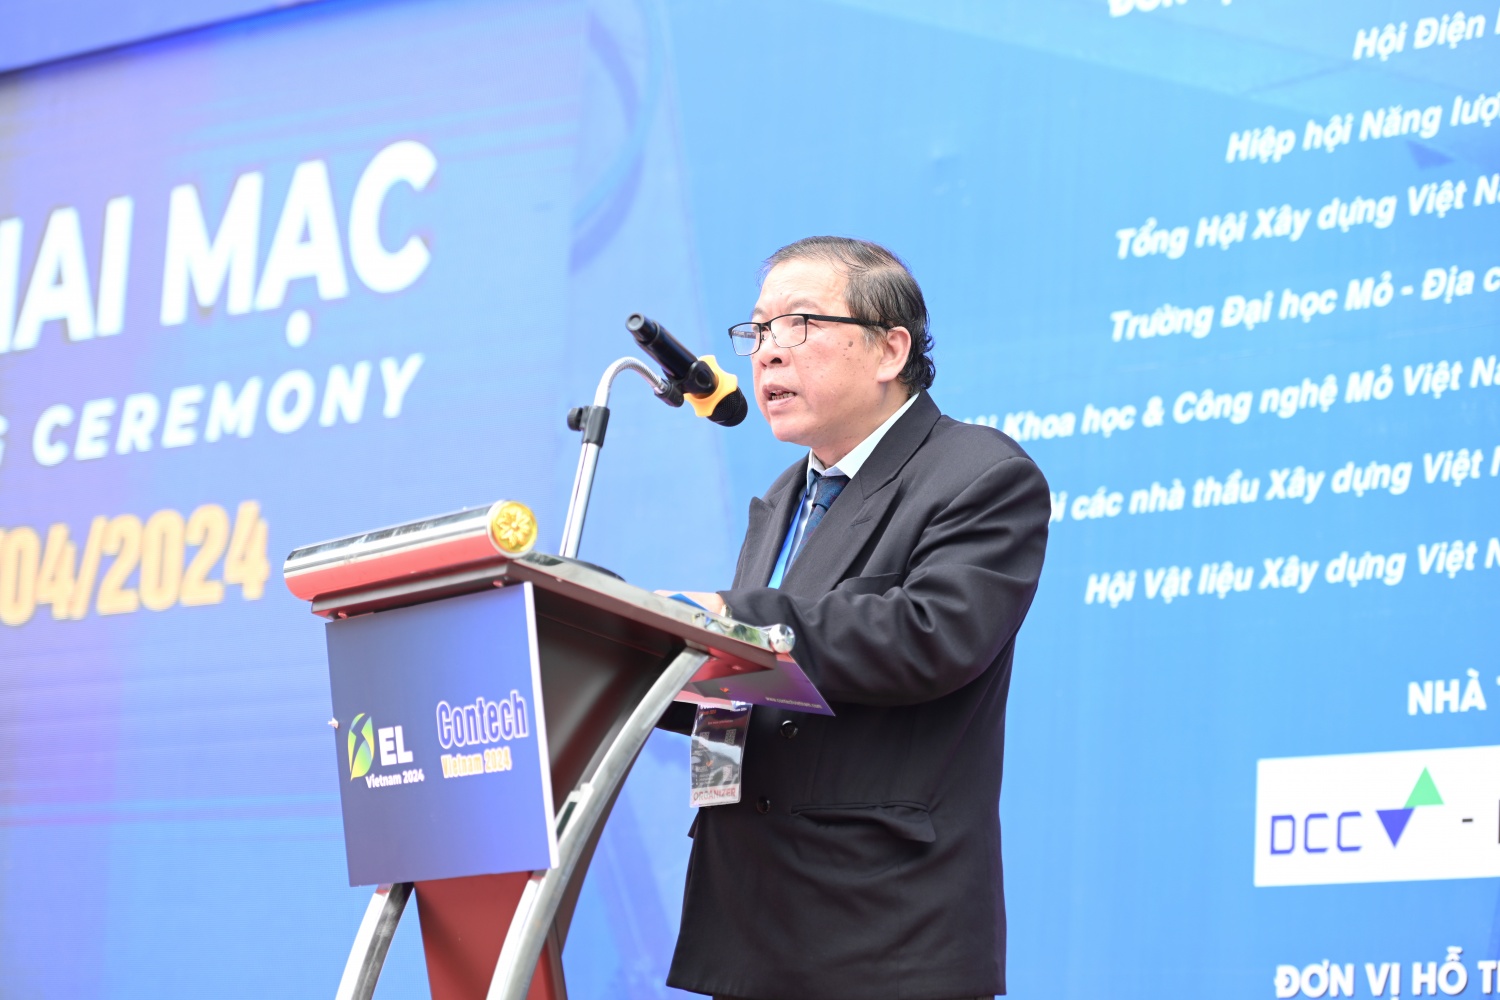 Ông Lê Ngọc Đức, Phó Tổng giám đốc Công ty cổ phần Quảng cáo và Hội chợ Quốc tế Hà Nội phát biểu khai mạc triển lãm